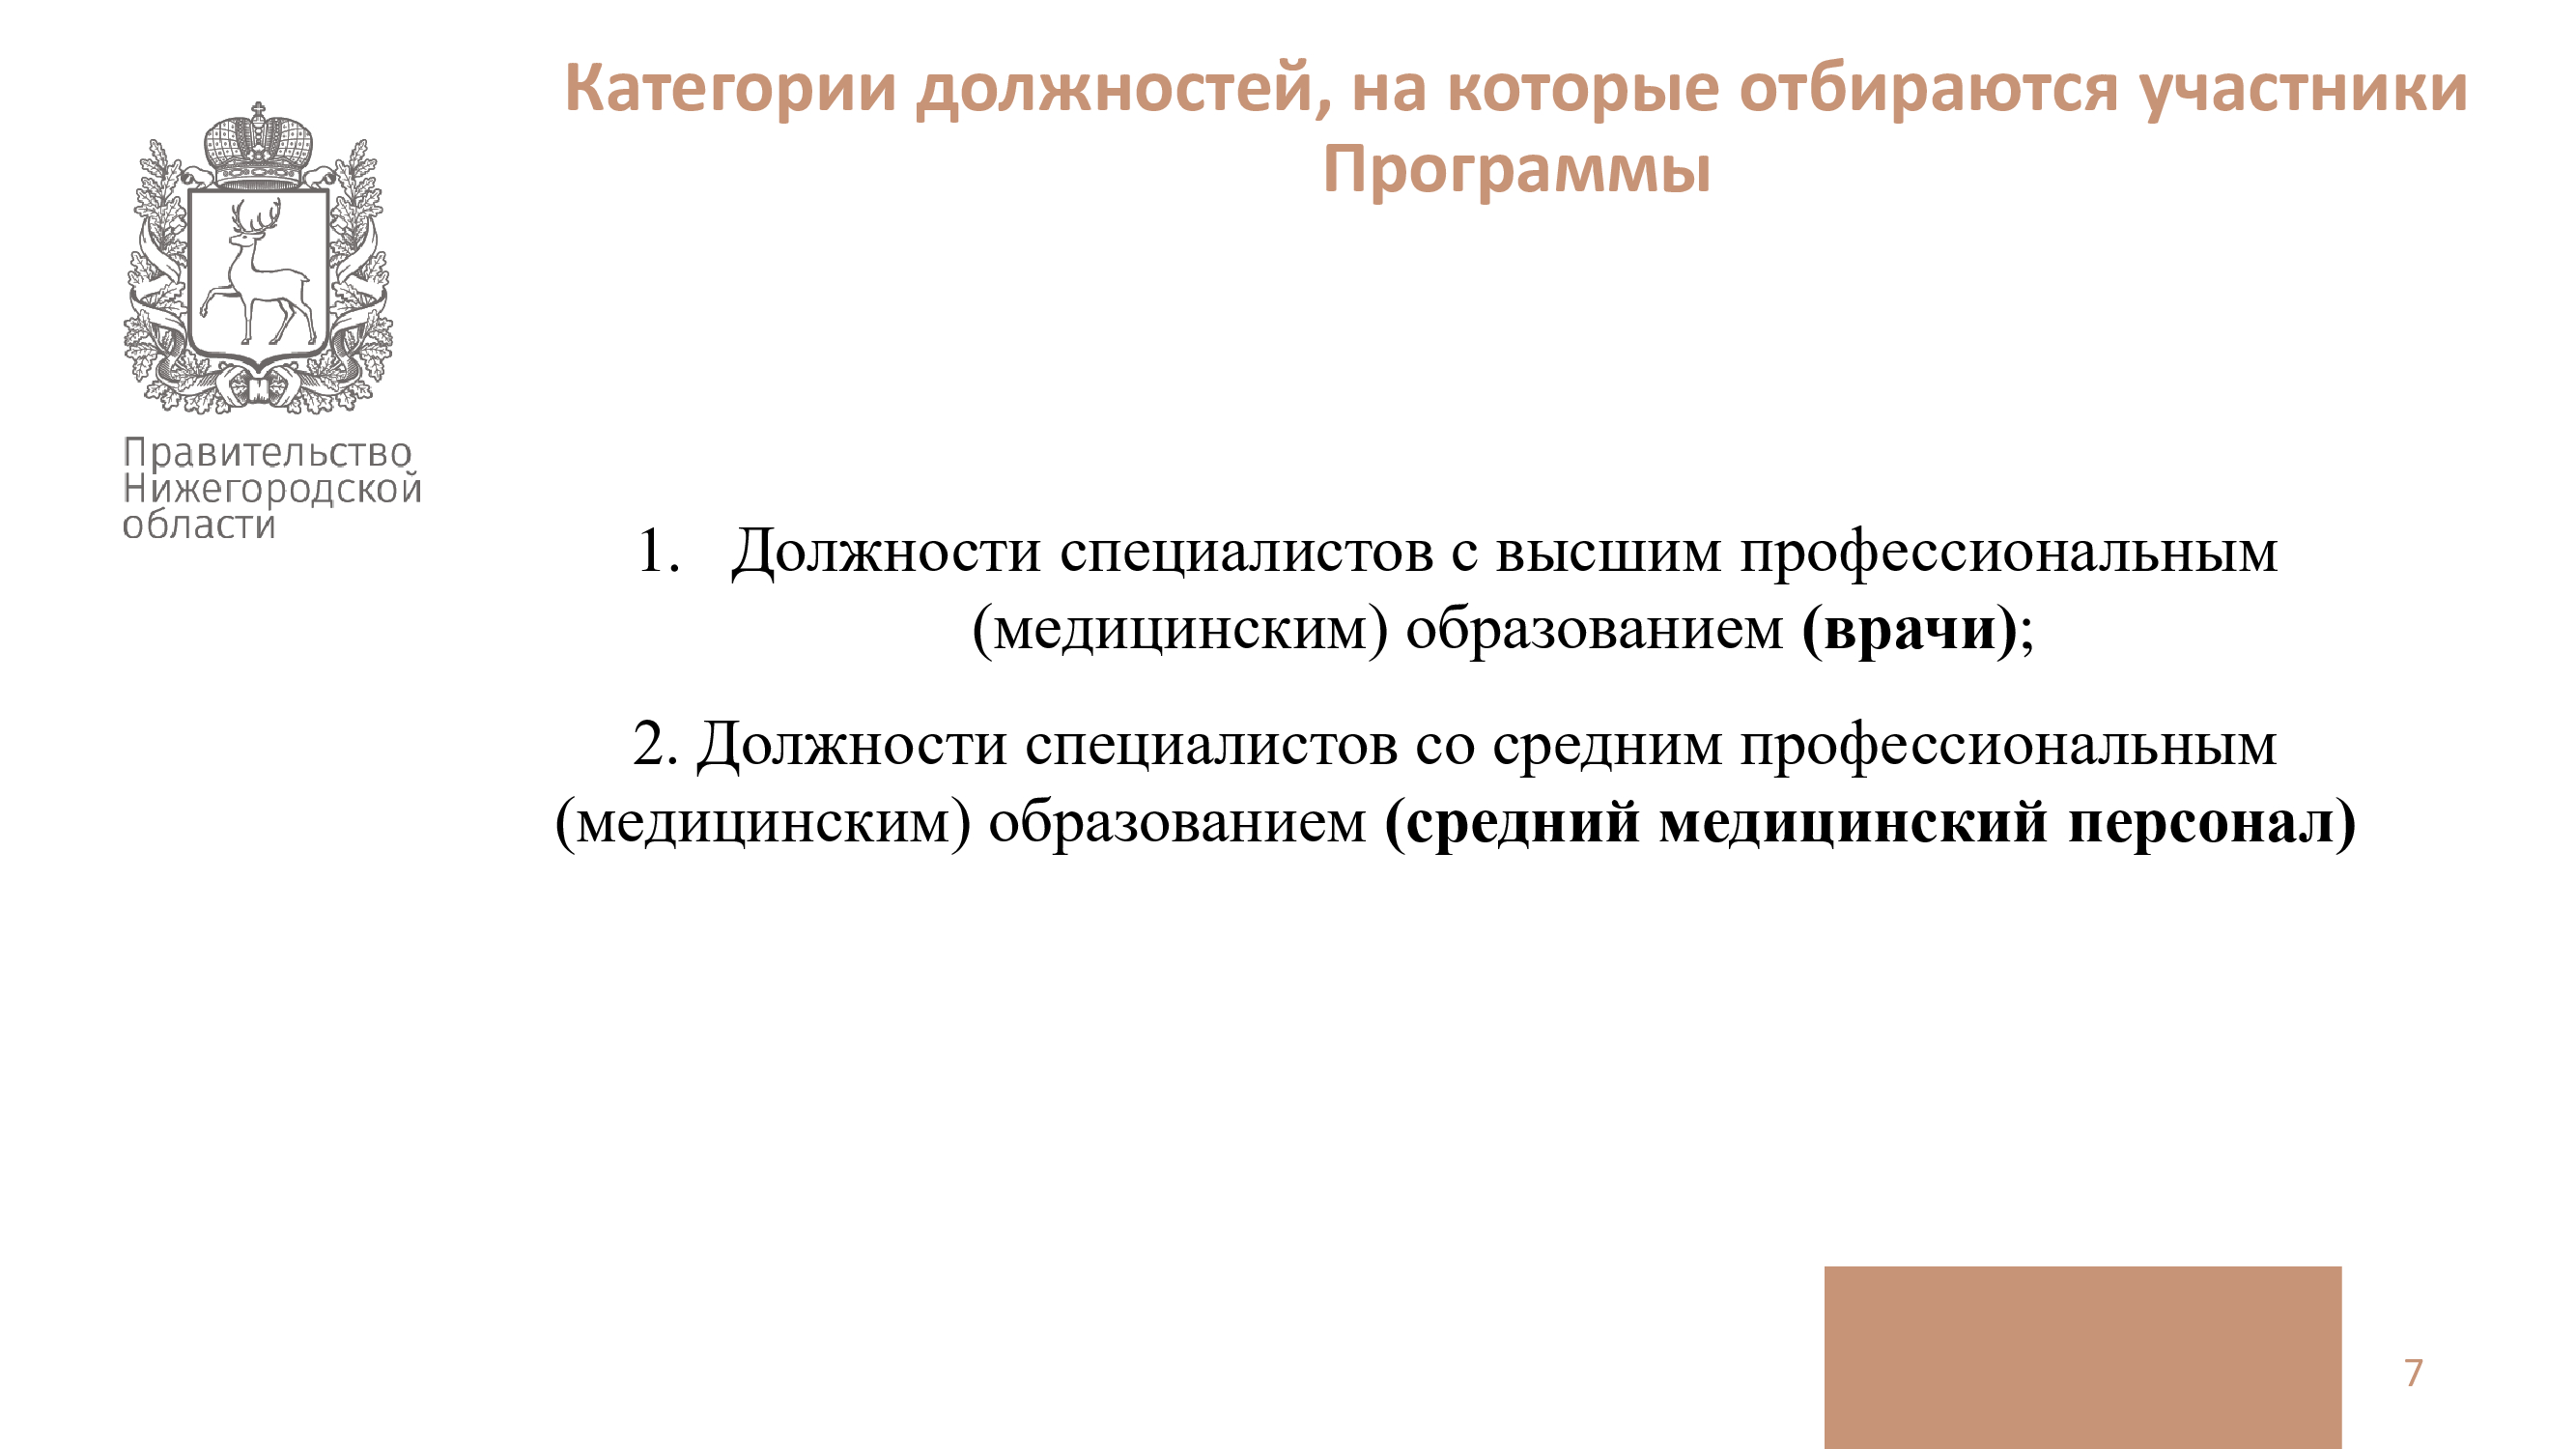 853 постановление правительства нижегородской области. Улучшение жилищных условий специалистов.